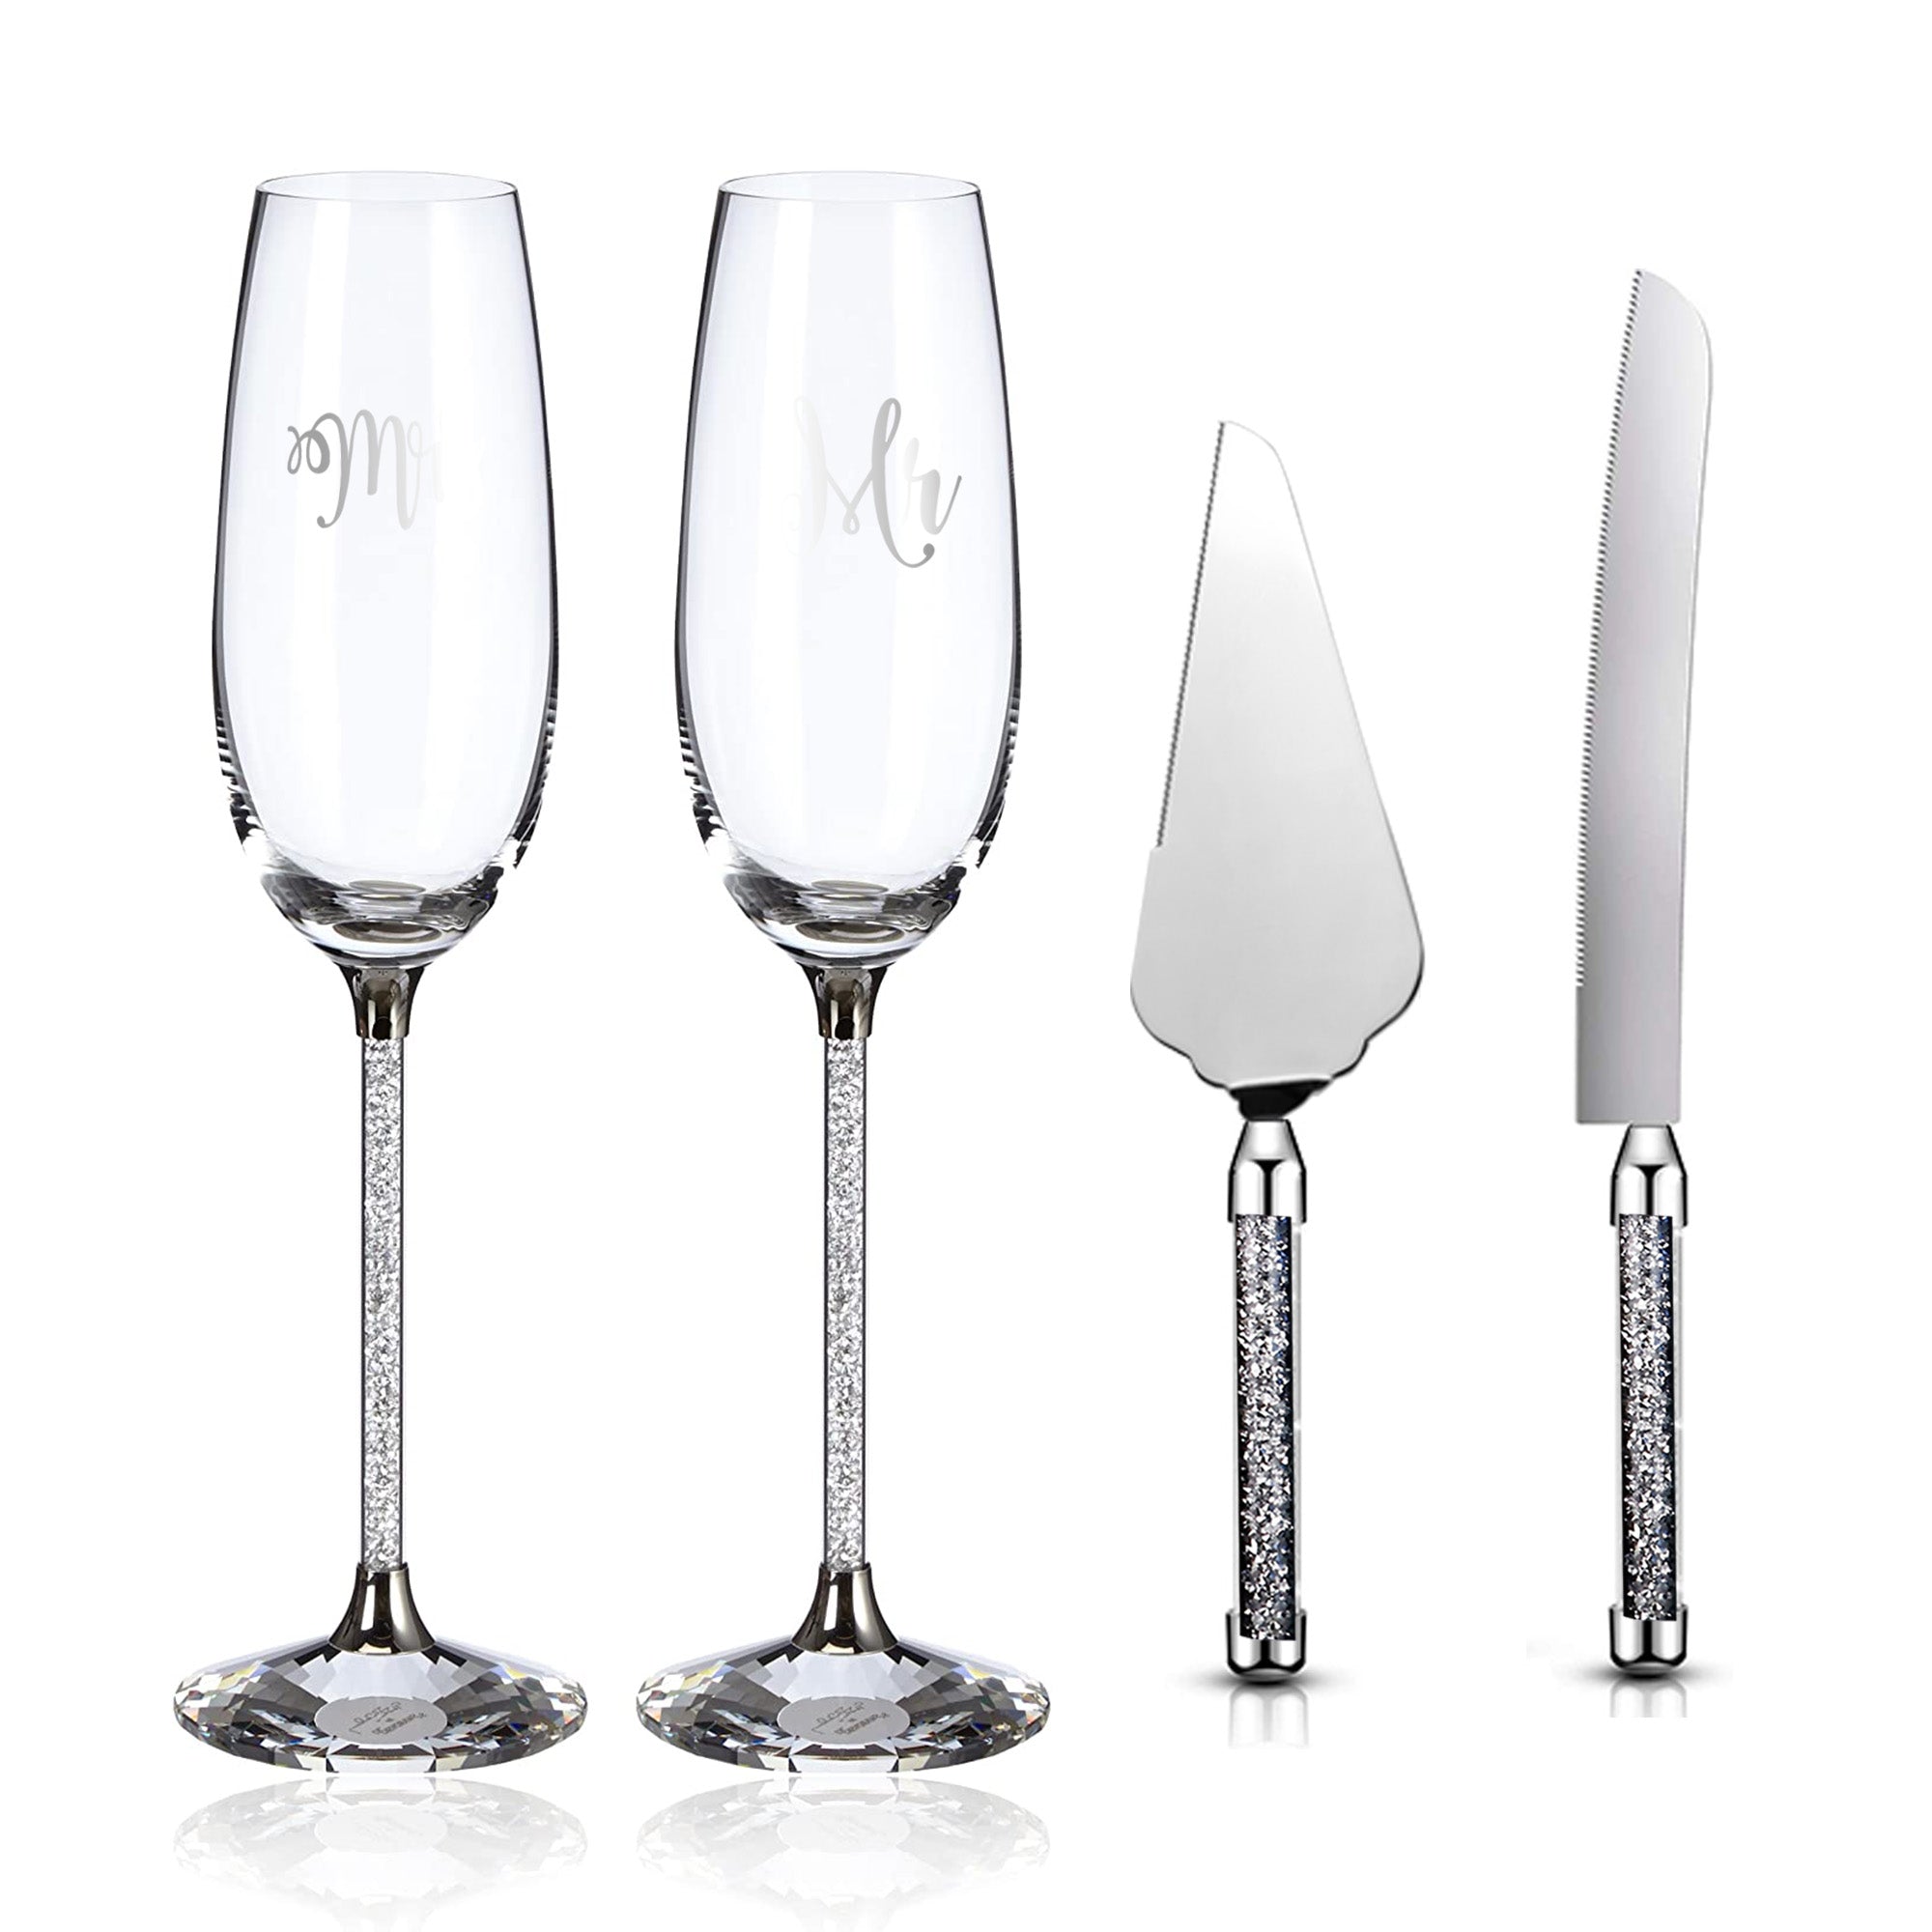 http://varlka.com/cdn/shop/products/wedding-cake-knife-and-server-set-crystal-champagne-flutes-glasses-engraved-mr-mrs-cake-cutting-set-for-wedding-bride-and-groom-toasting-champagne-flutes-annive-562197.jpg?v=1699263662